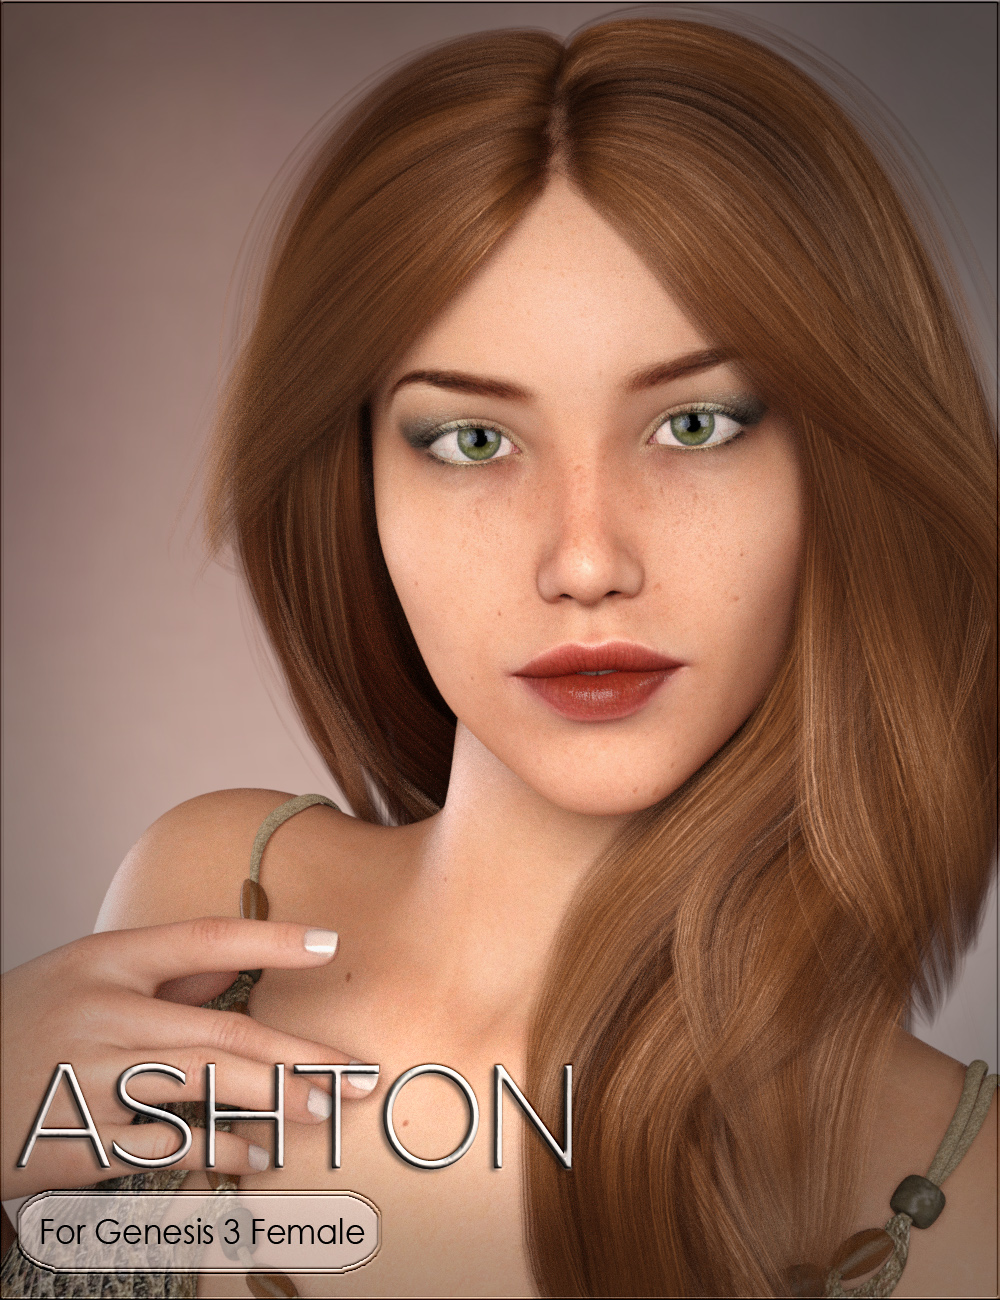 HPVYK Ashton for Genesis 3 Female by: SR3vyktohria, 3D Models by Daz 3D